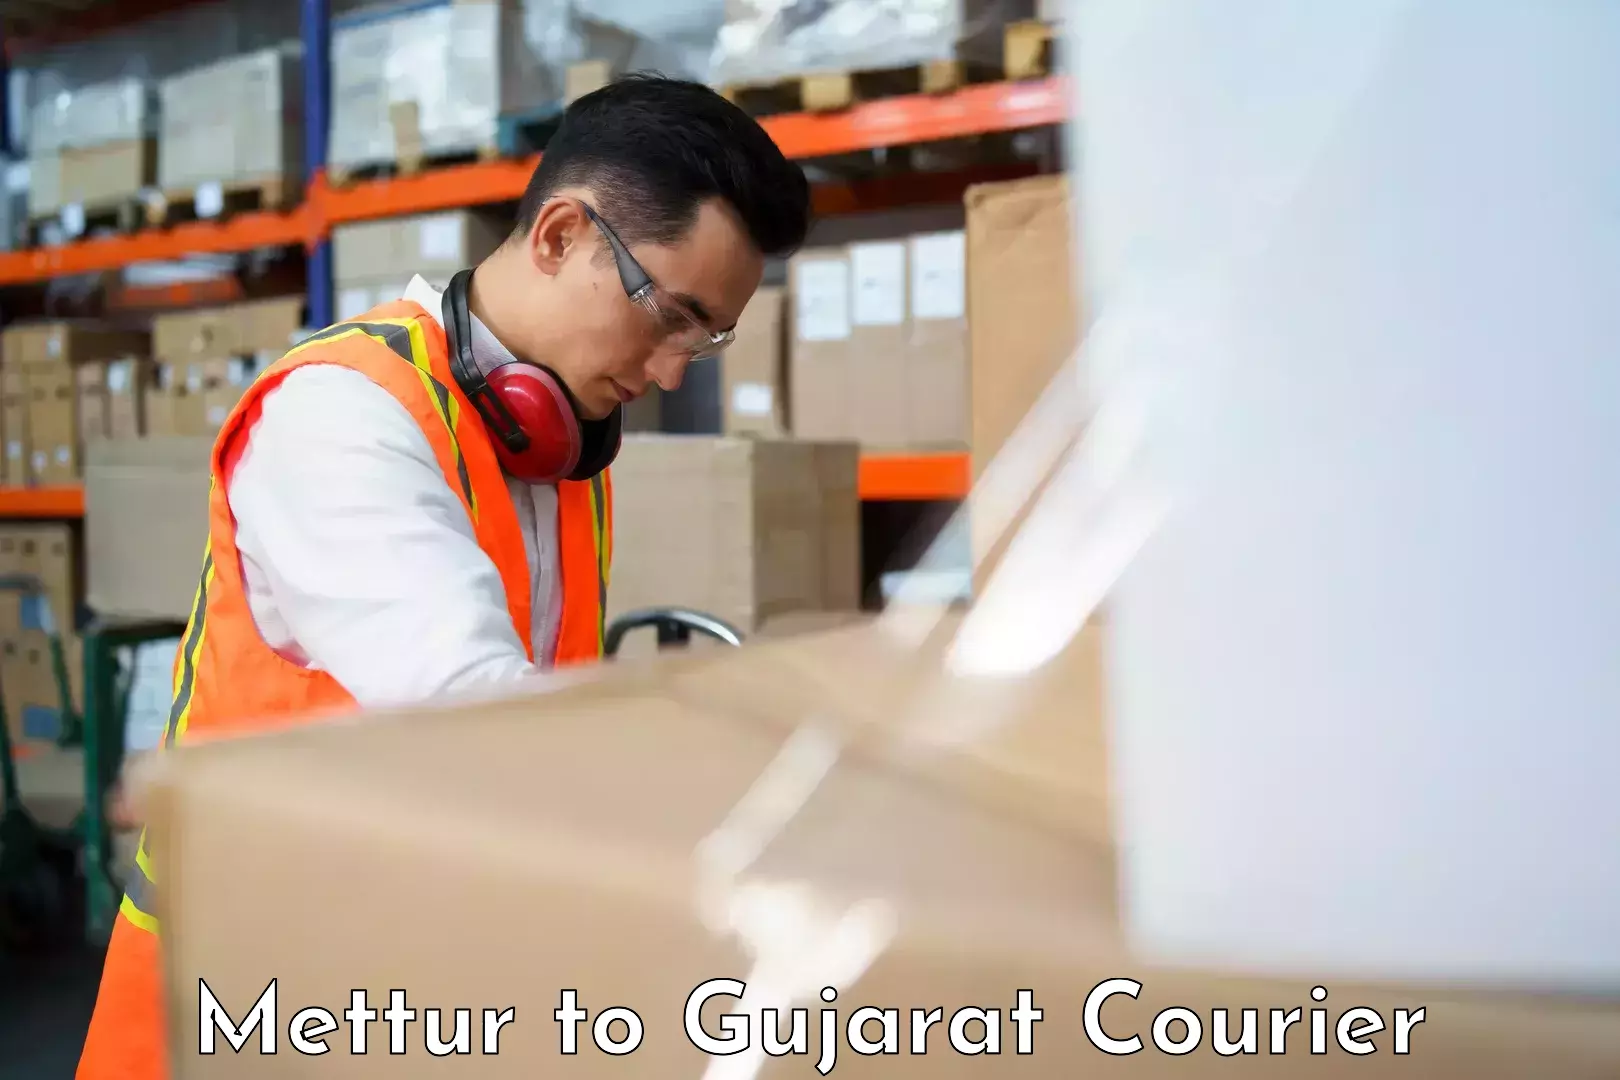 Furniture transport company Mettur to Gujarat